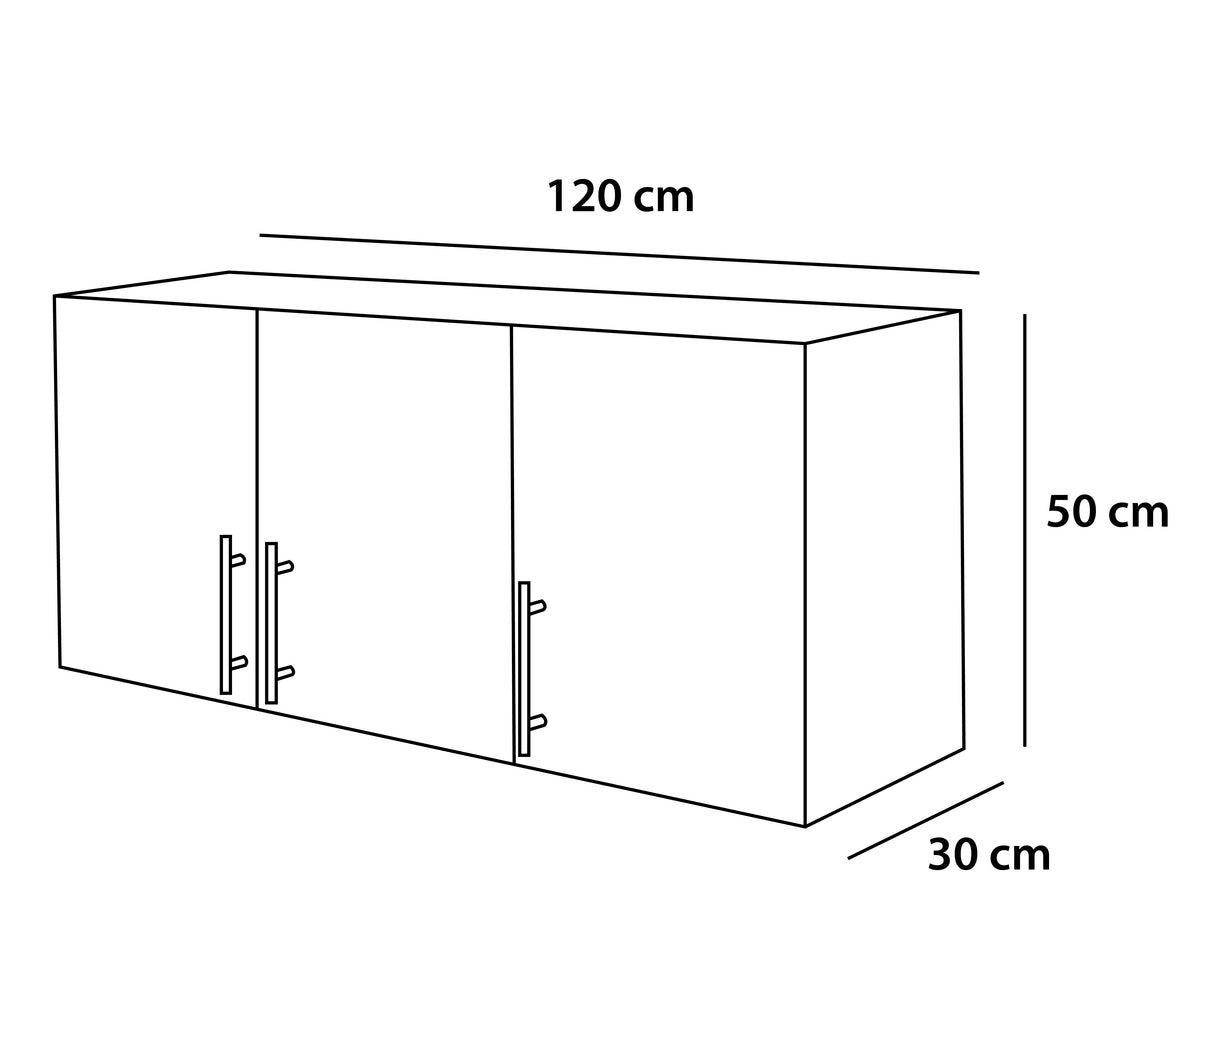 Mueble aéreo de cocina 3 puertas blanco/gris Powerfik